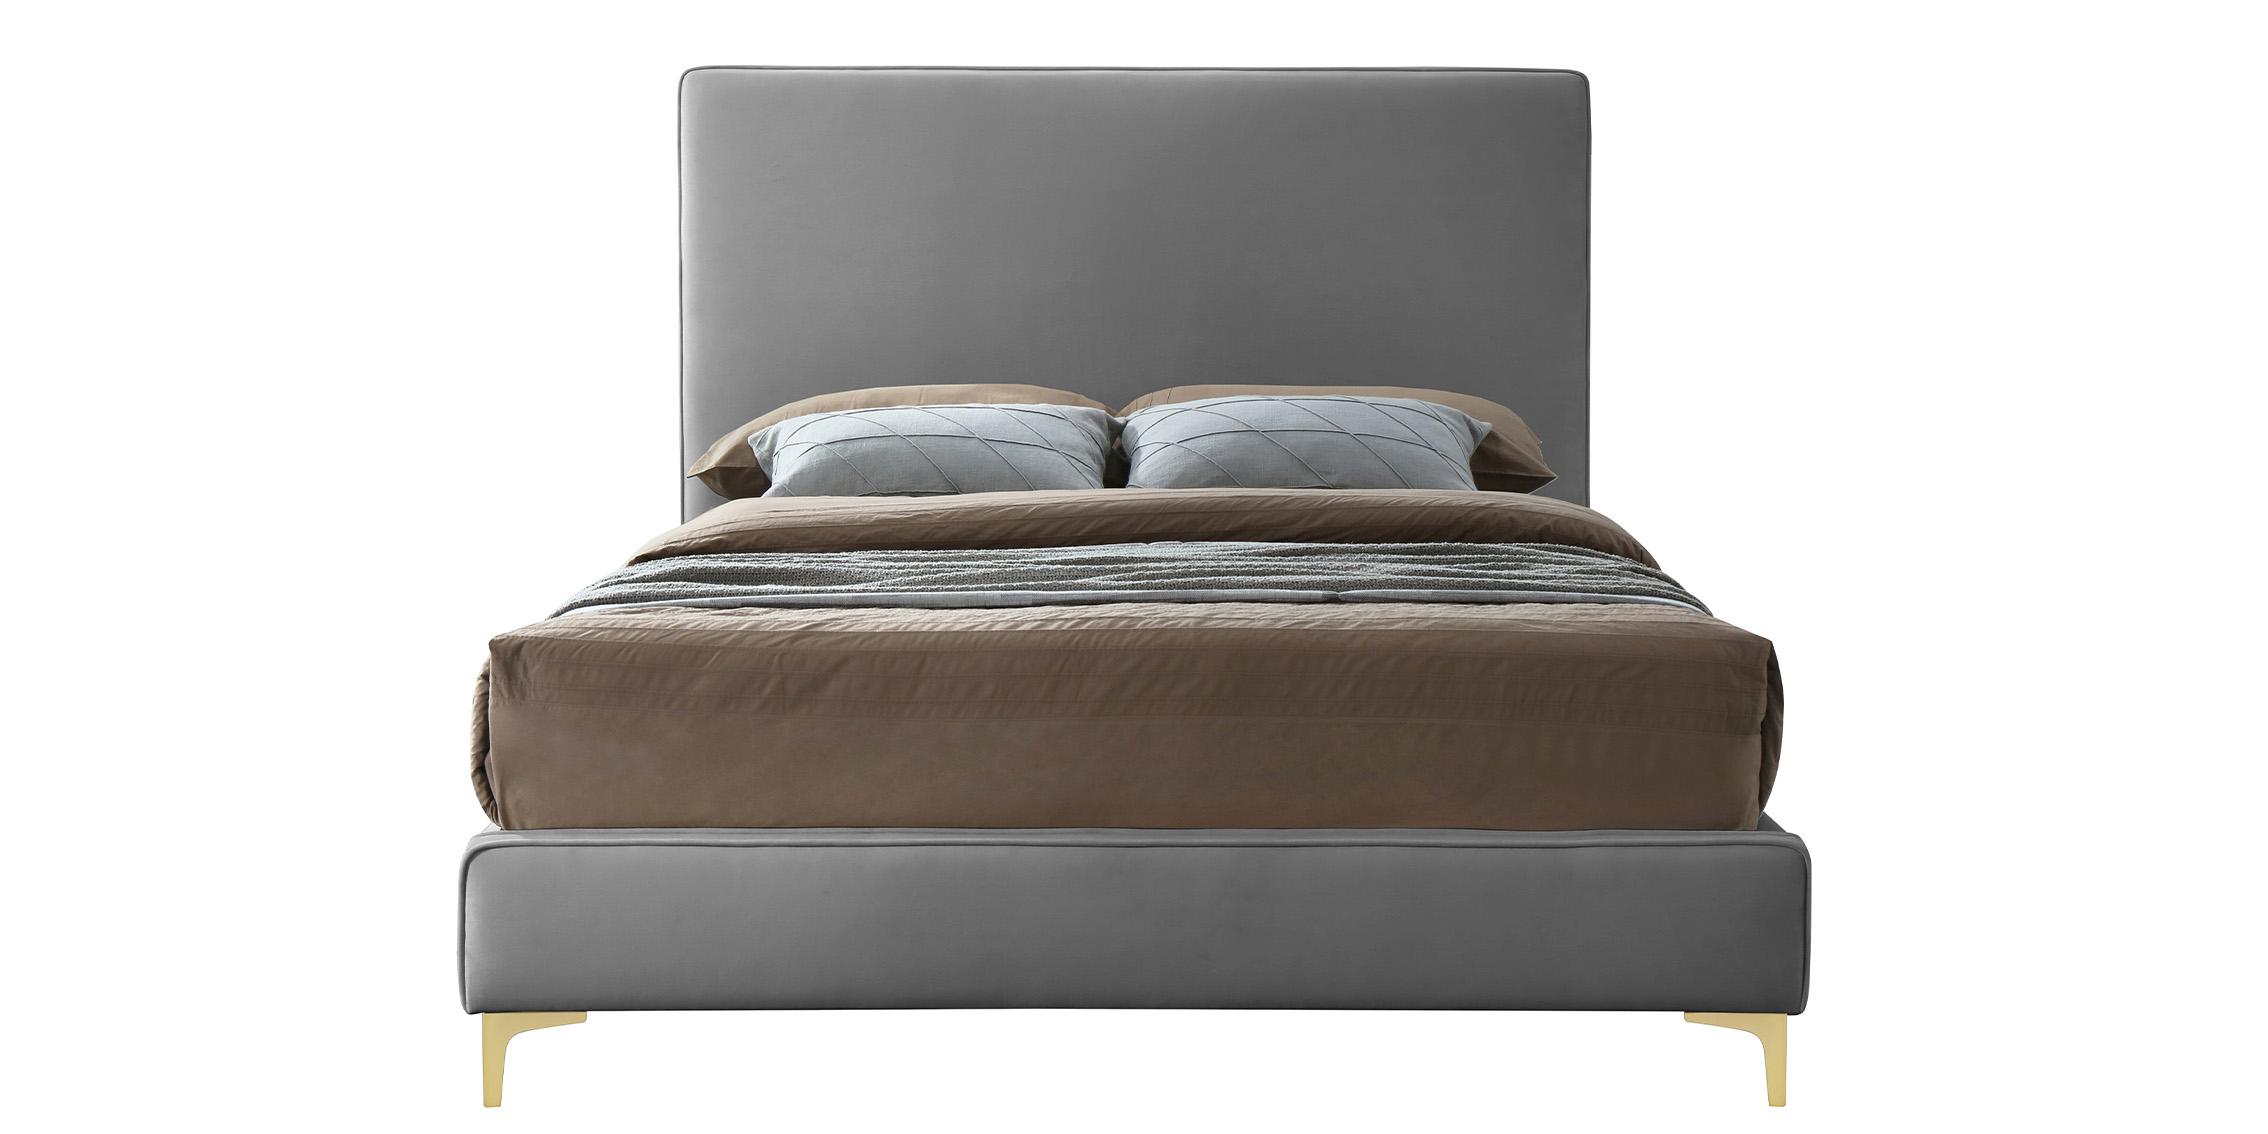 

    
GeriGrey-K Meridian Furniture Platform Bed
